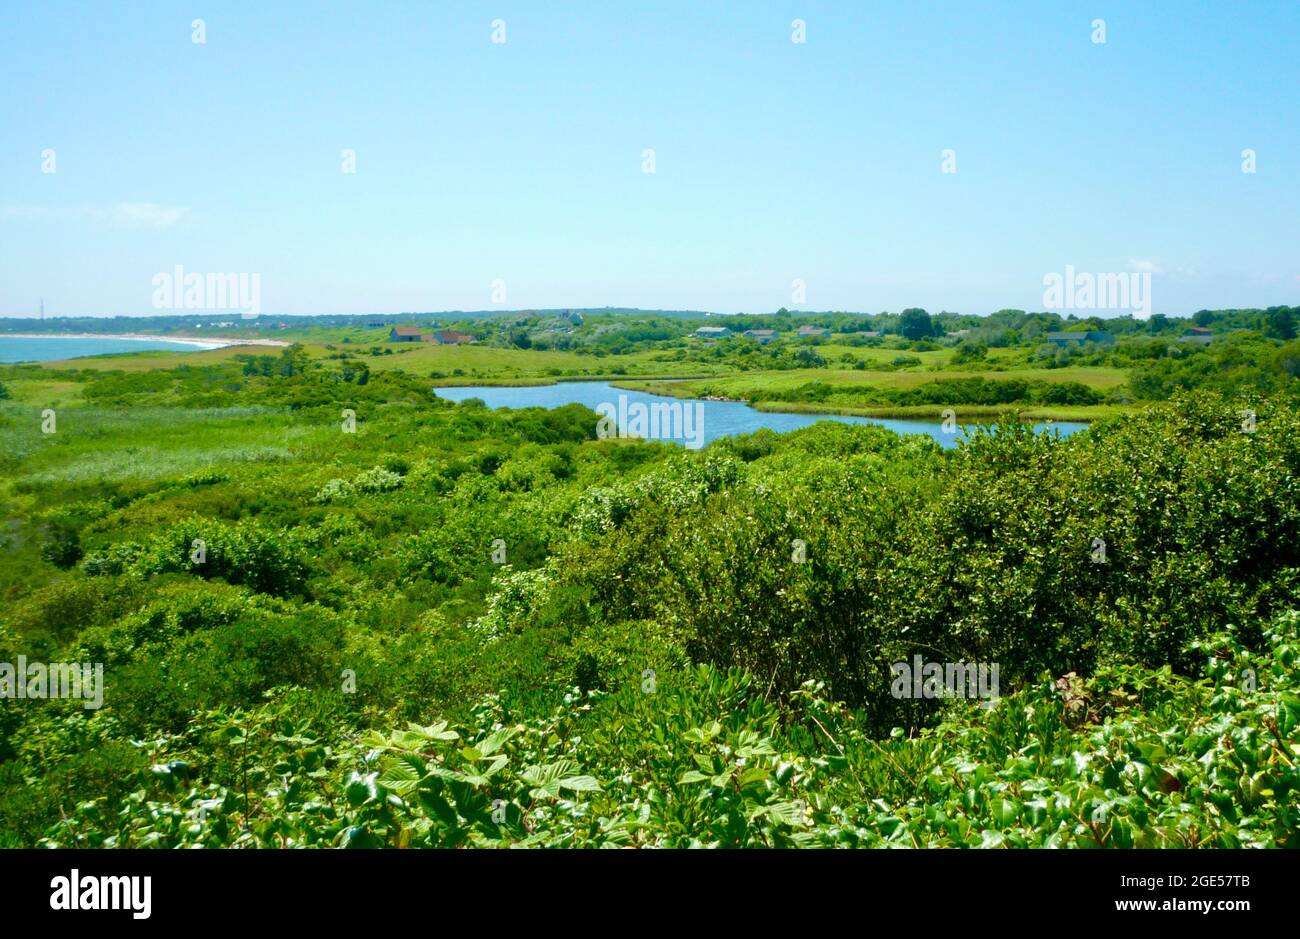 Ein Wanderweg auf Block Island blickt auf eine grüne Landschaft aus Sommerfeldern, Sträuchern und einer Binnenschifffahrt mit dem Atlantischen Ozean in der Ferne. Stockfoto